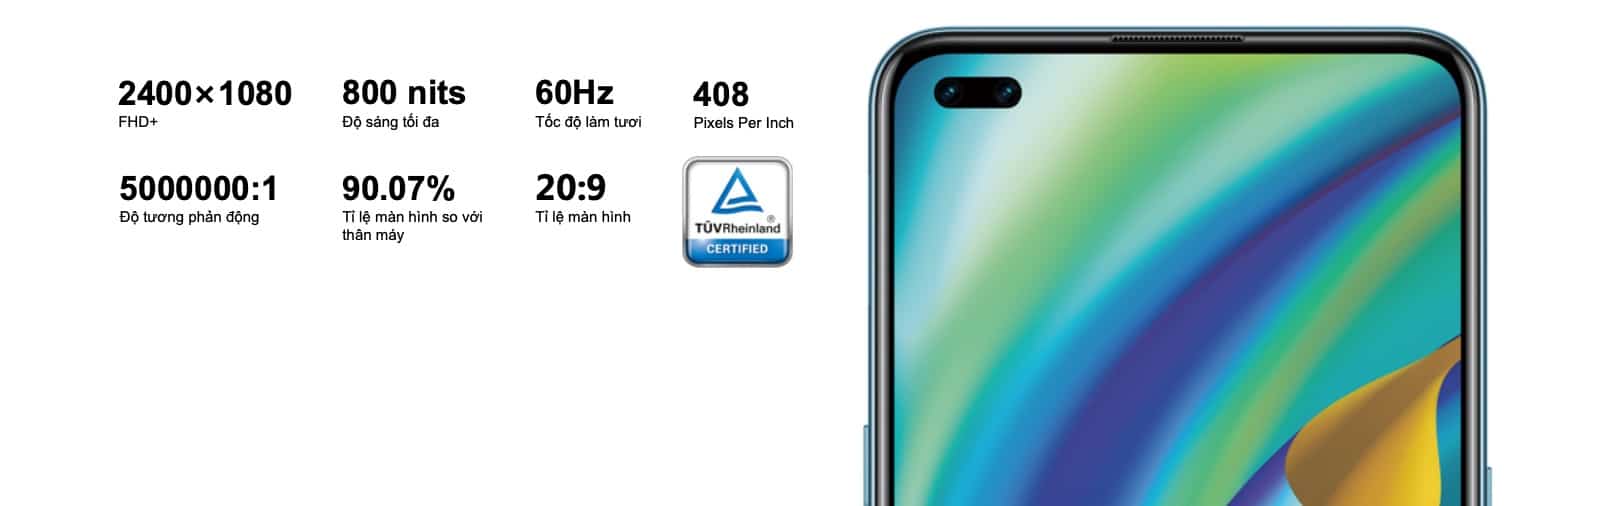 5 điểm nhấn nổi bật của OPPO A93, đây là chiếc smartphone tầm trung đáng mua nhất cuối năm 2020